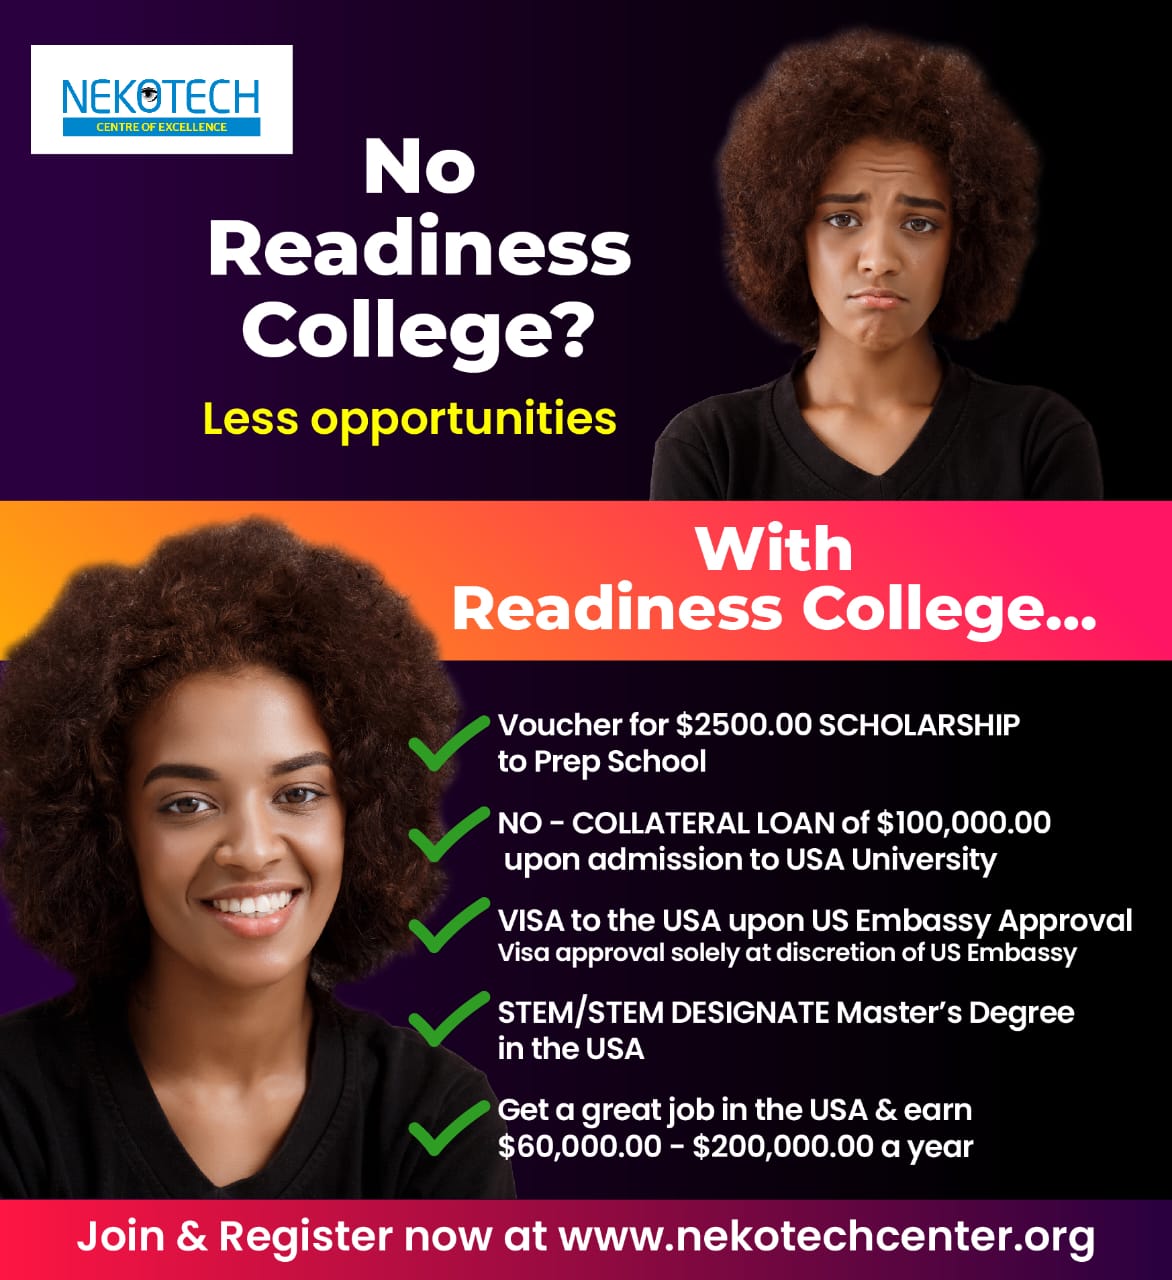 Nekotech Readiness College - Nekotech Center of Excellence